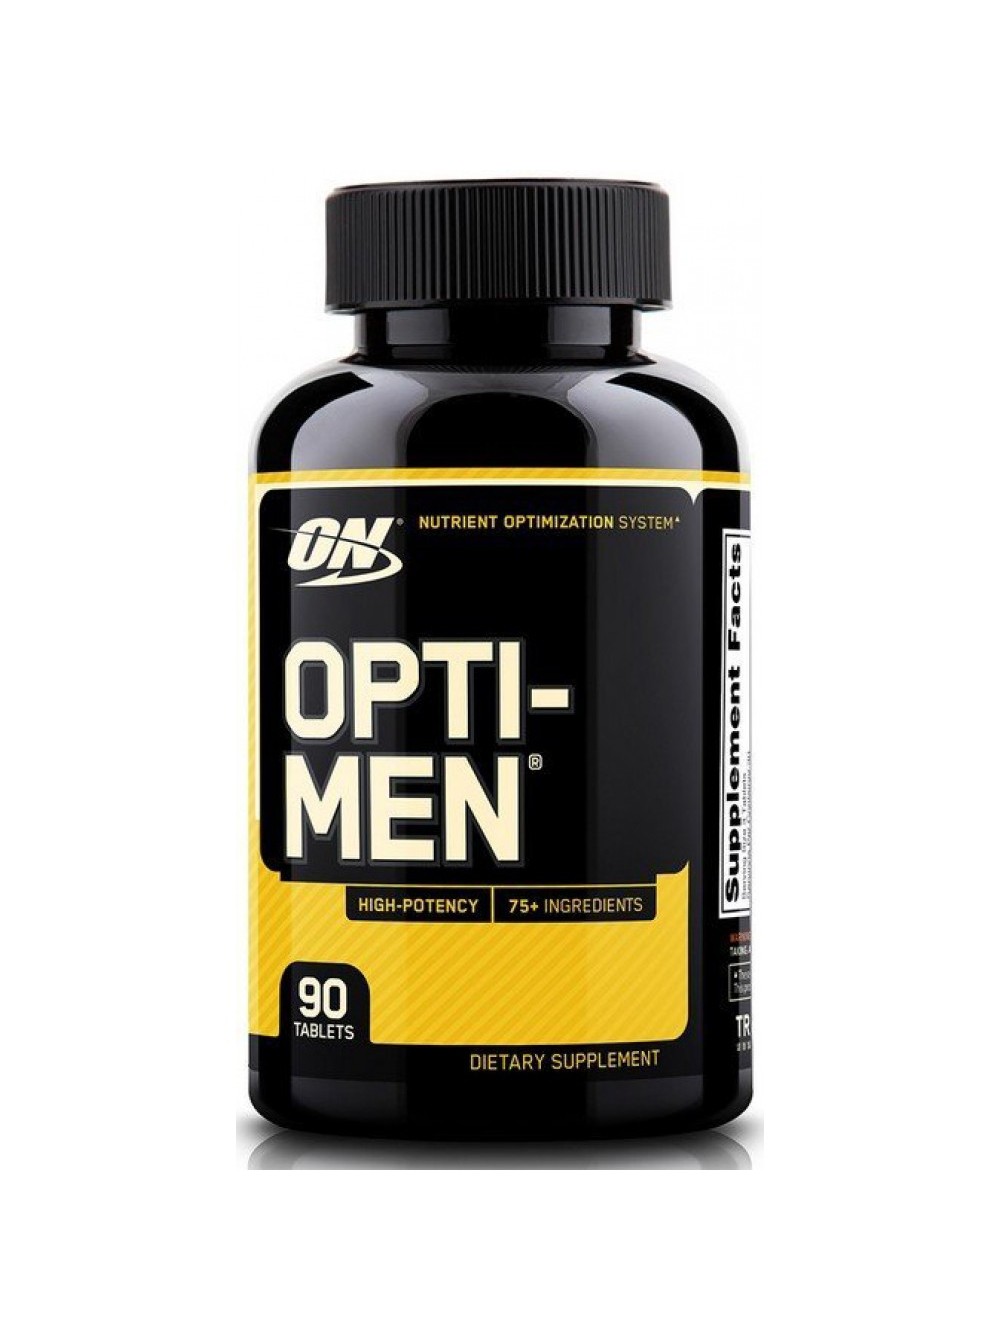 Купить мужские витамины. Optimum Nutrition Opti-men. Opti men 90. On Opti-men 90 Tab. Optimum Nutrition витамины.